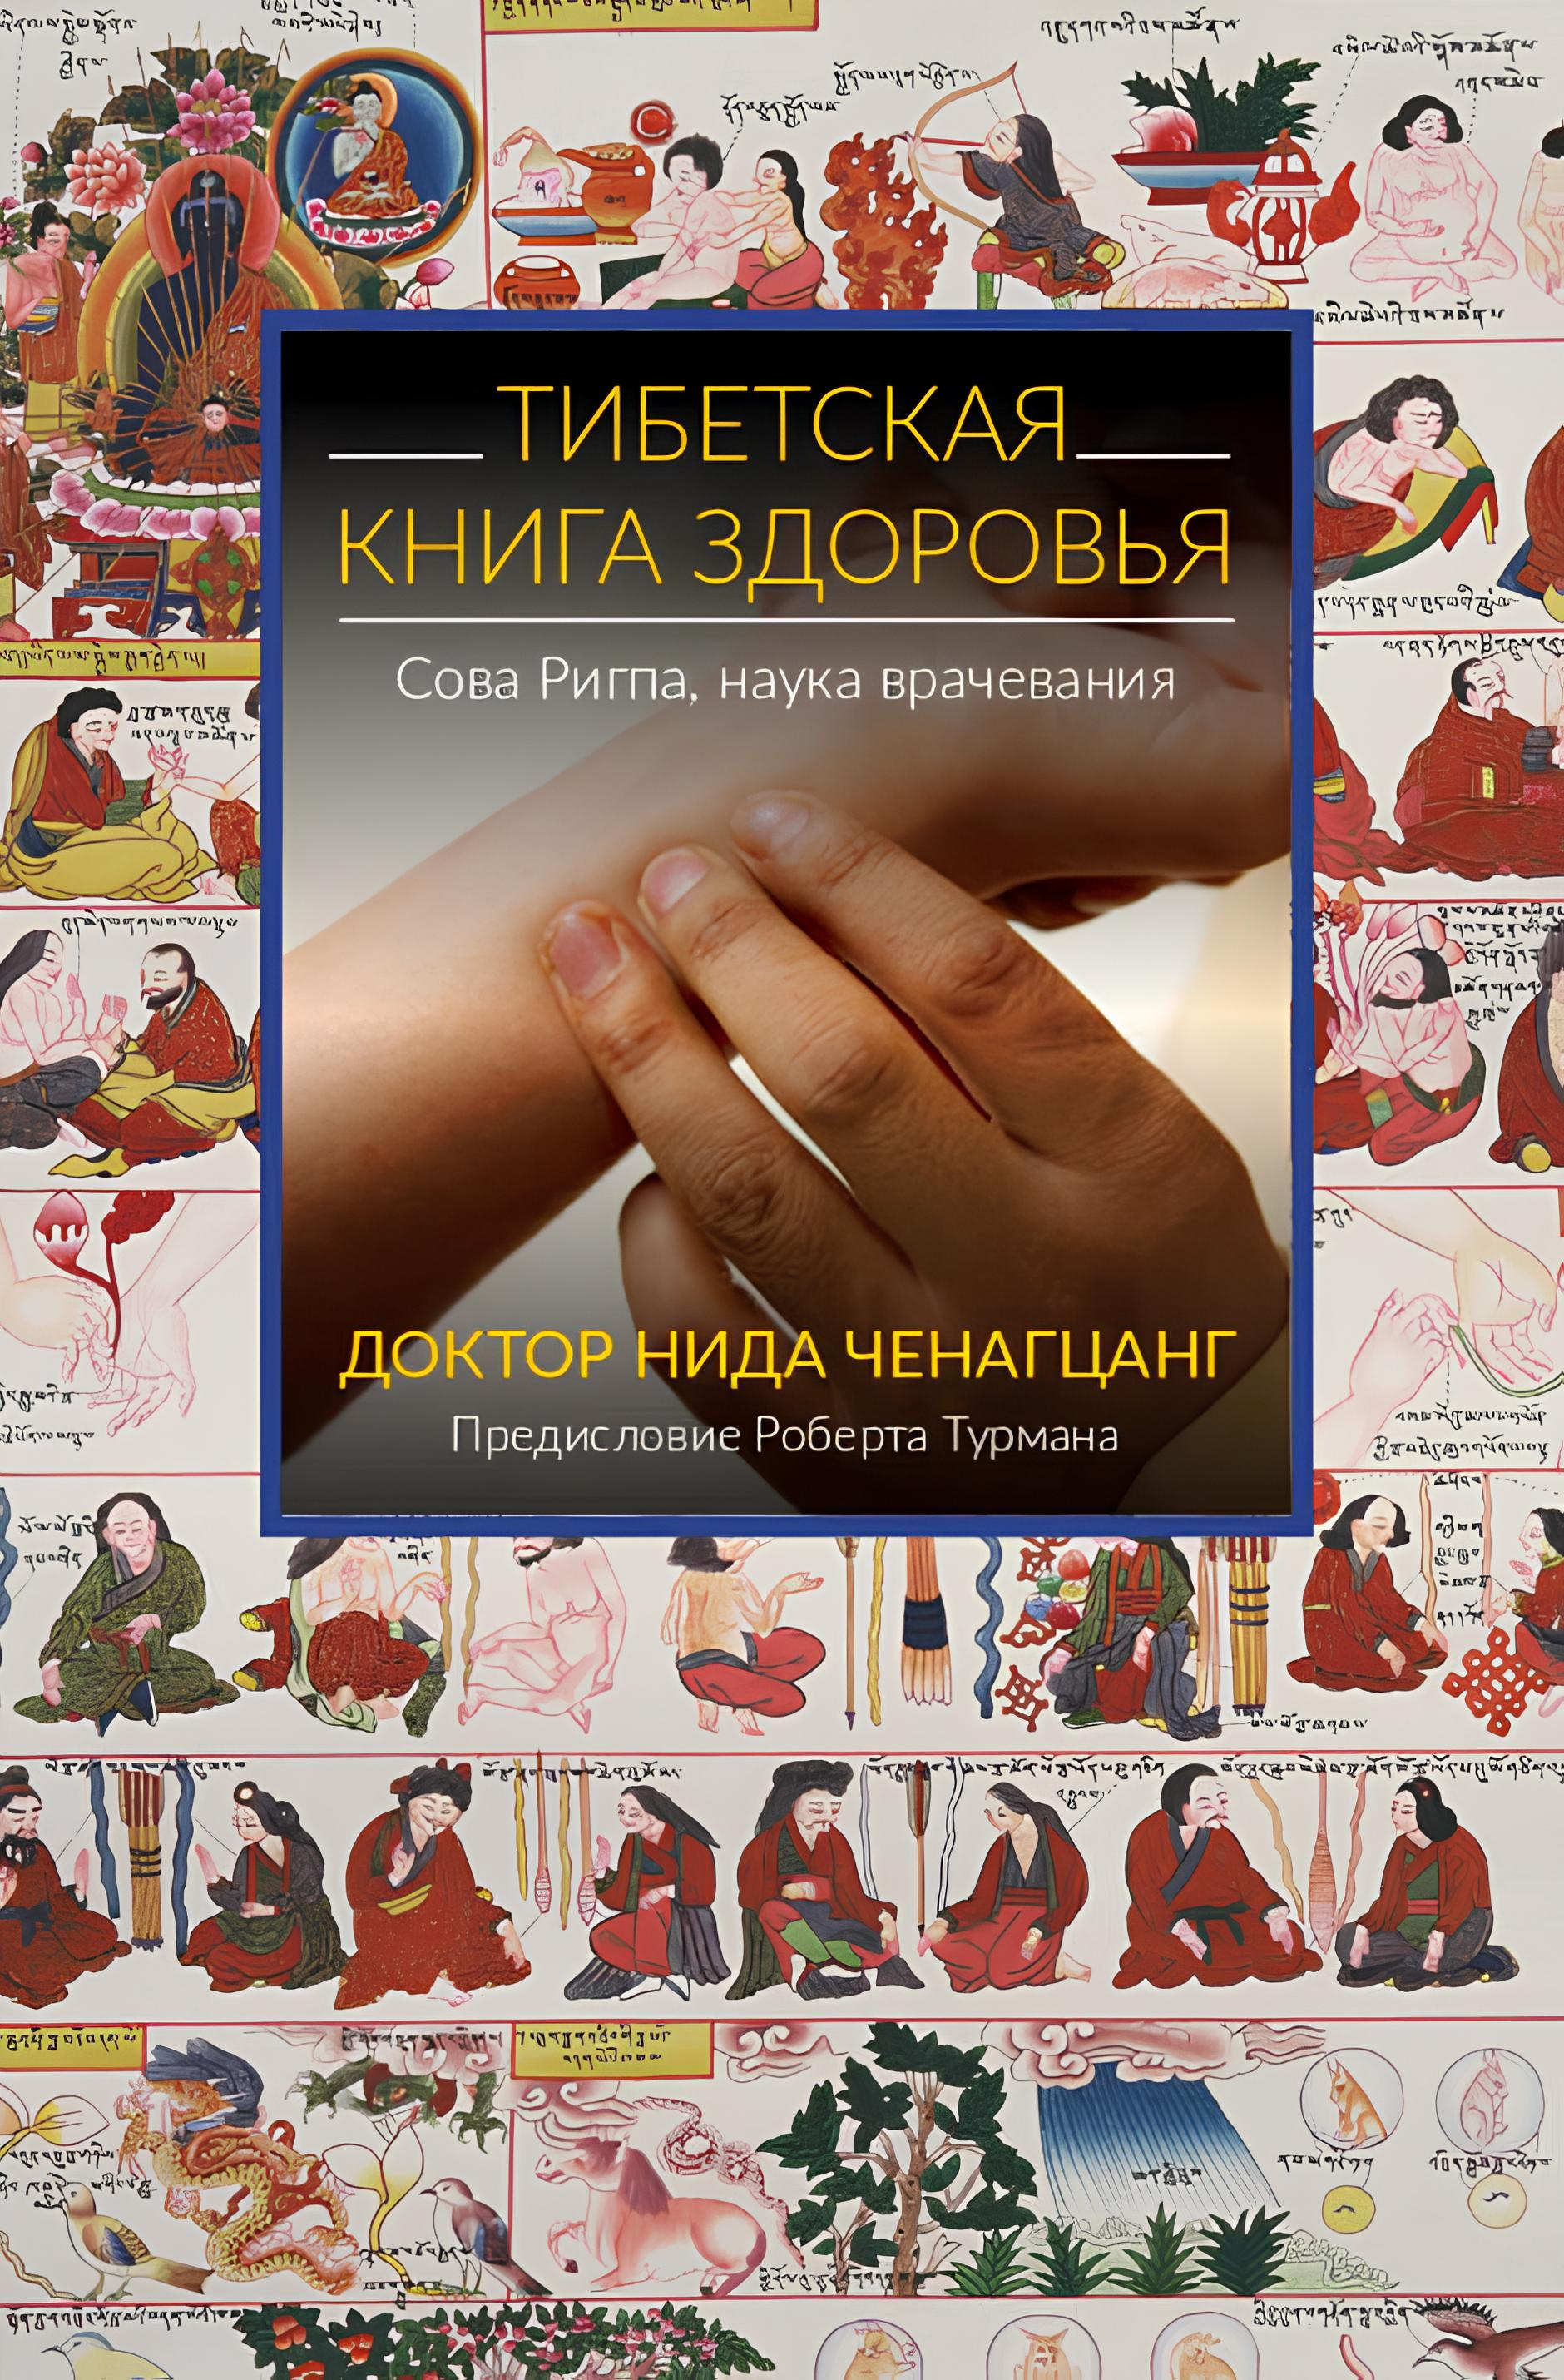 "Тибетская книга здоровья" 